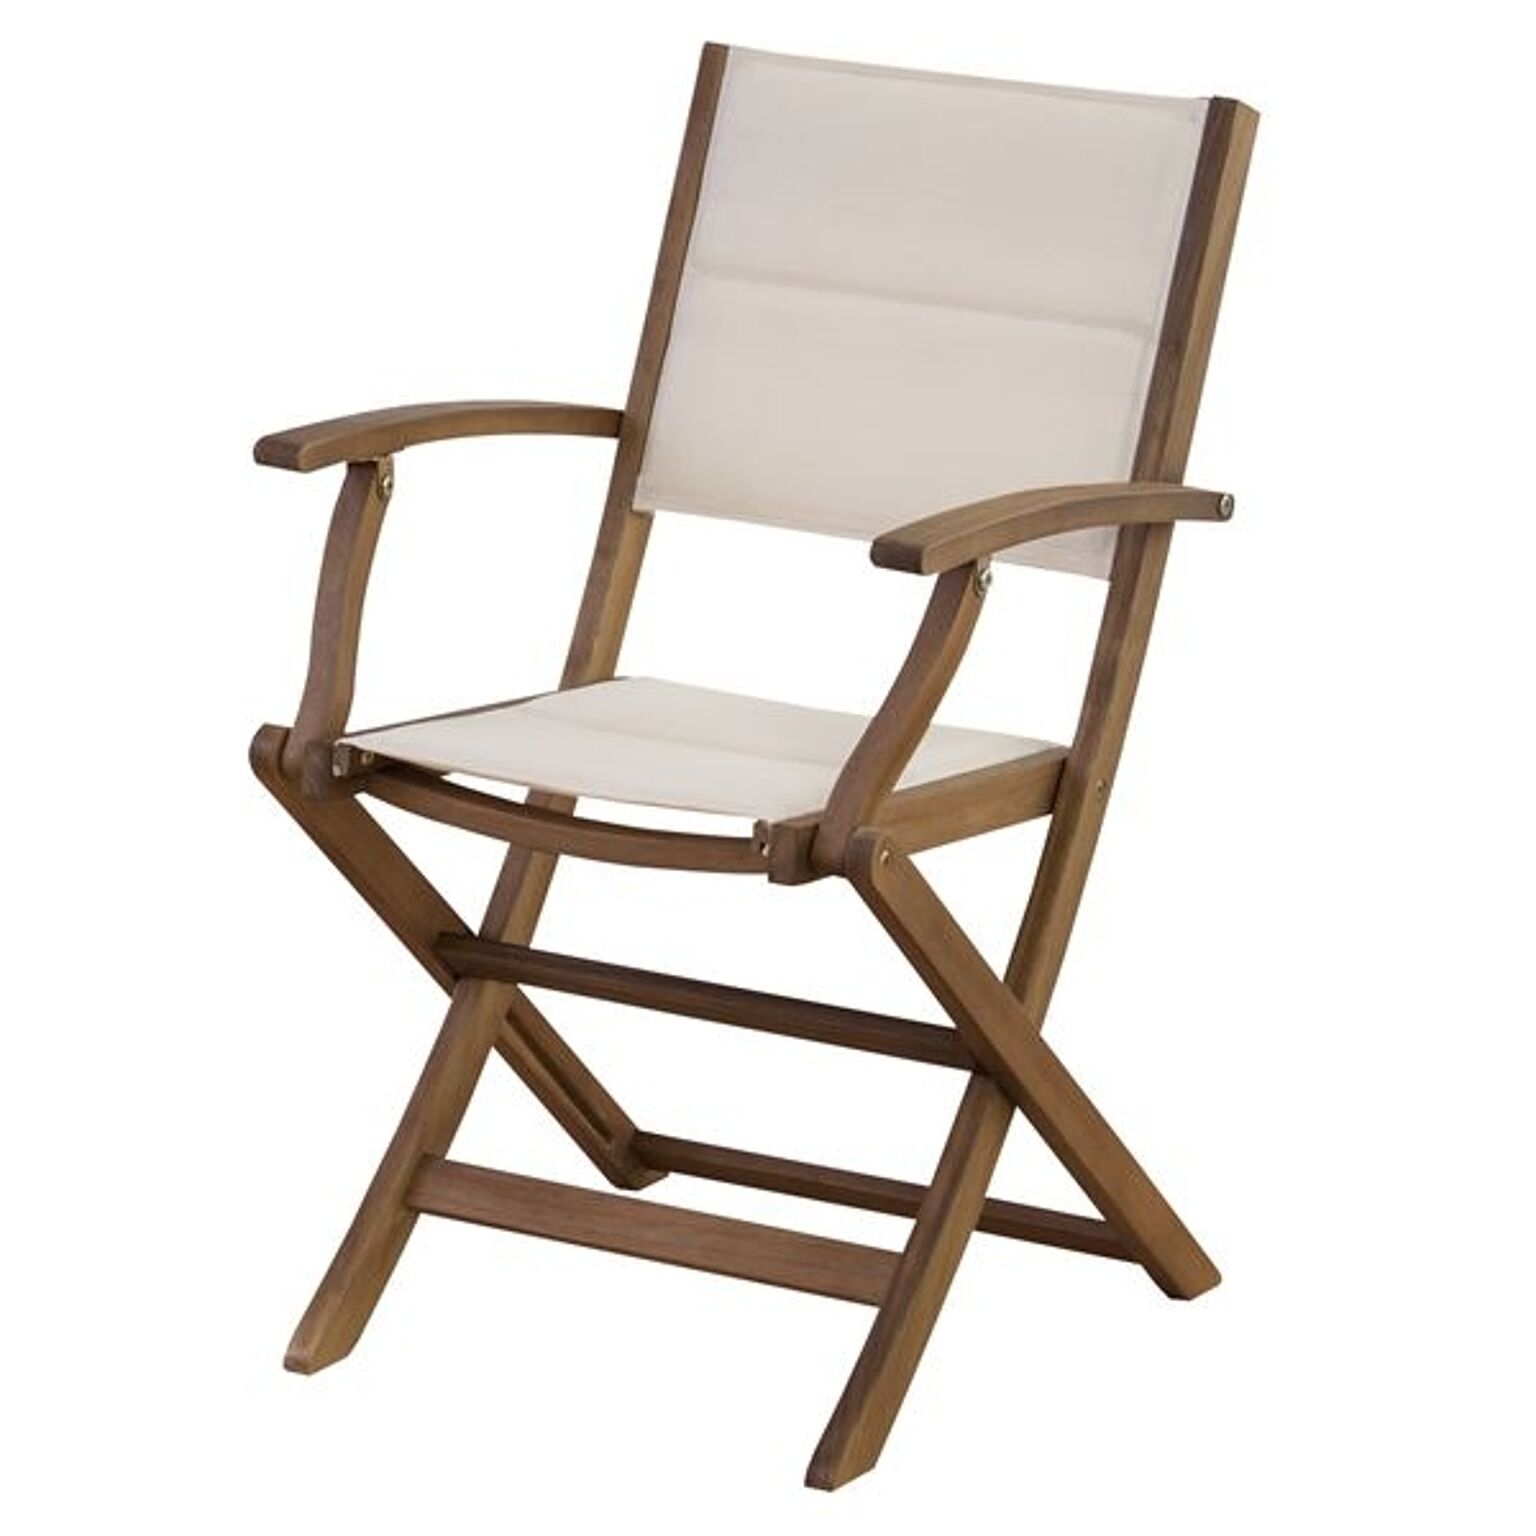 パーソナルチェア 幅52cm 肘付き 木製 アカシア オイル仕上 室内 屋外 マリーノ ガーデンチェア 椅子 ベランダ デッキ 庭 テラス